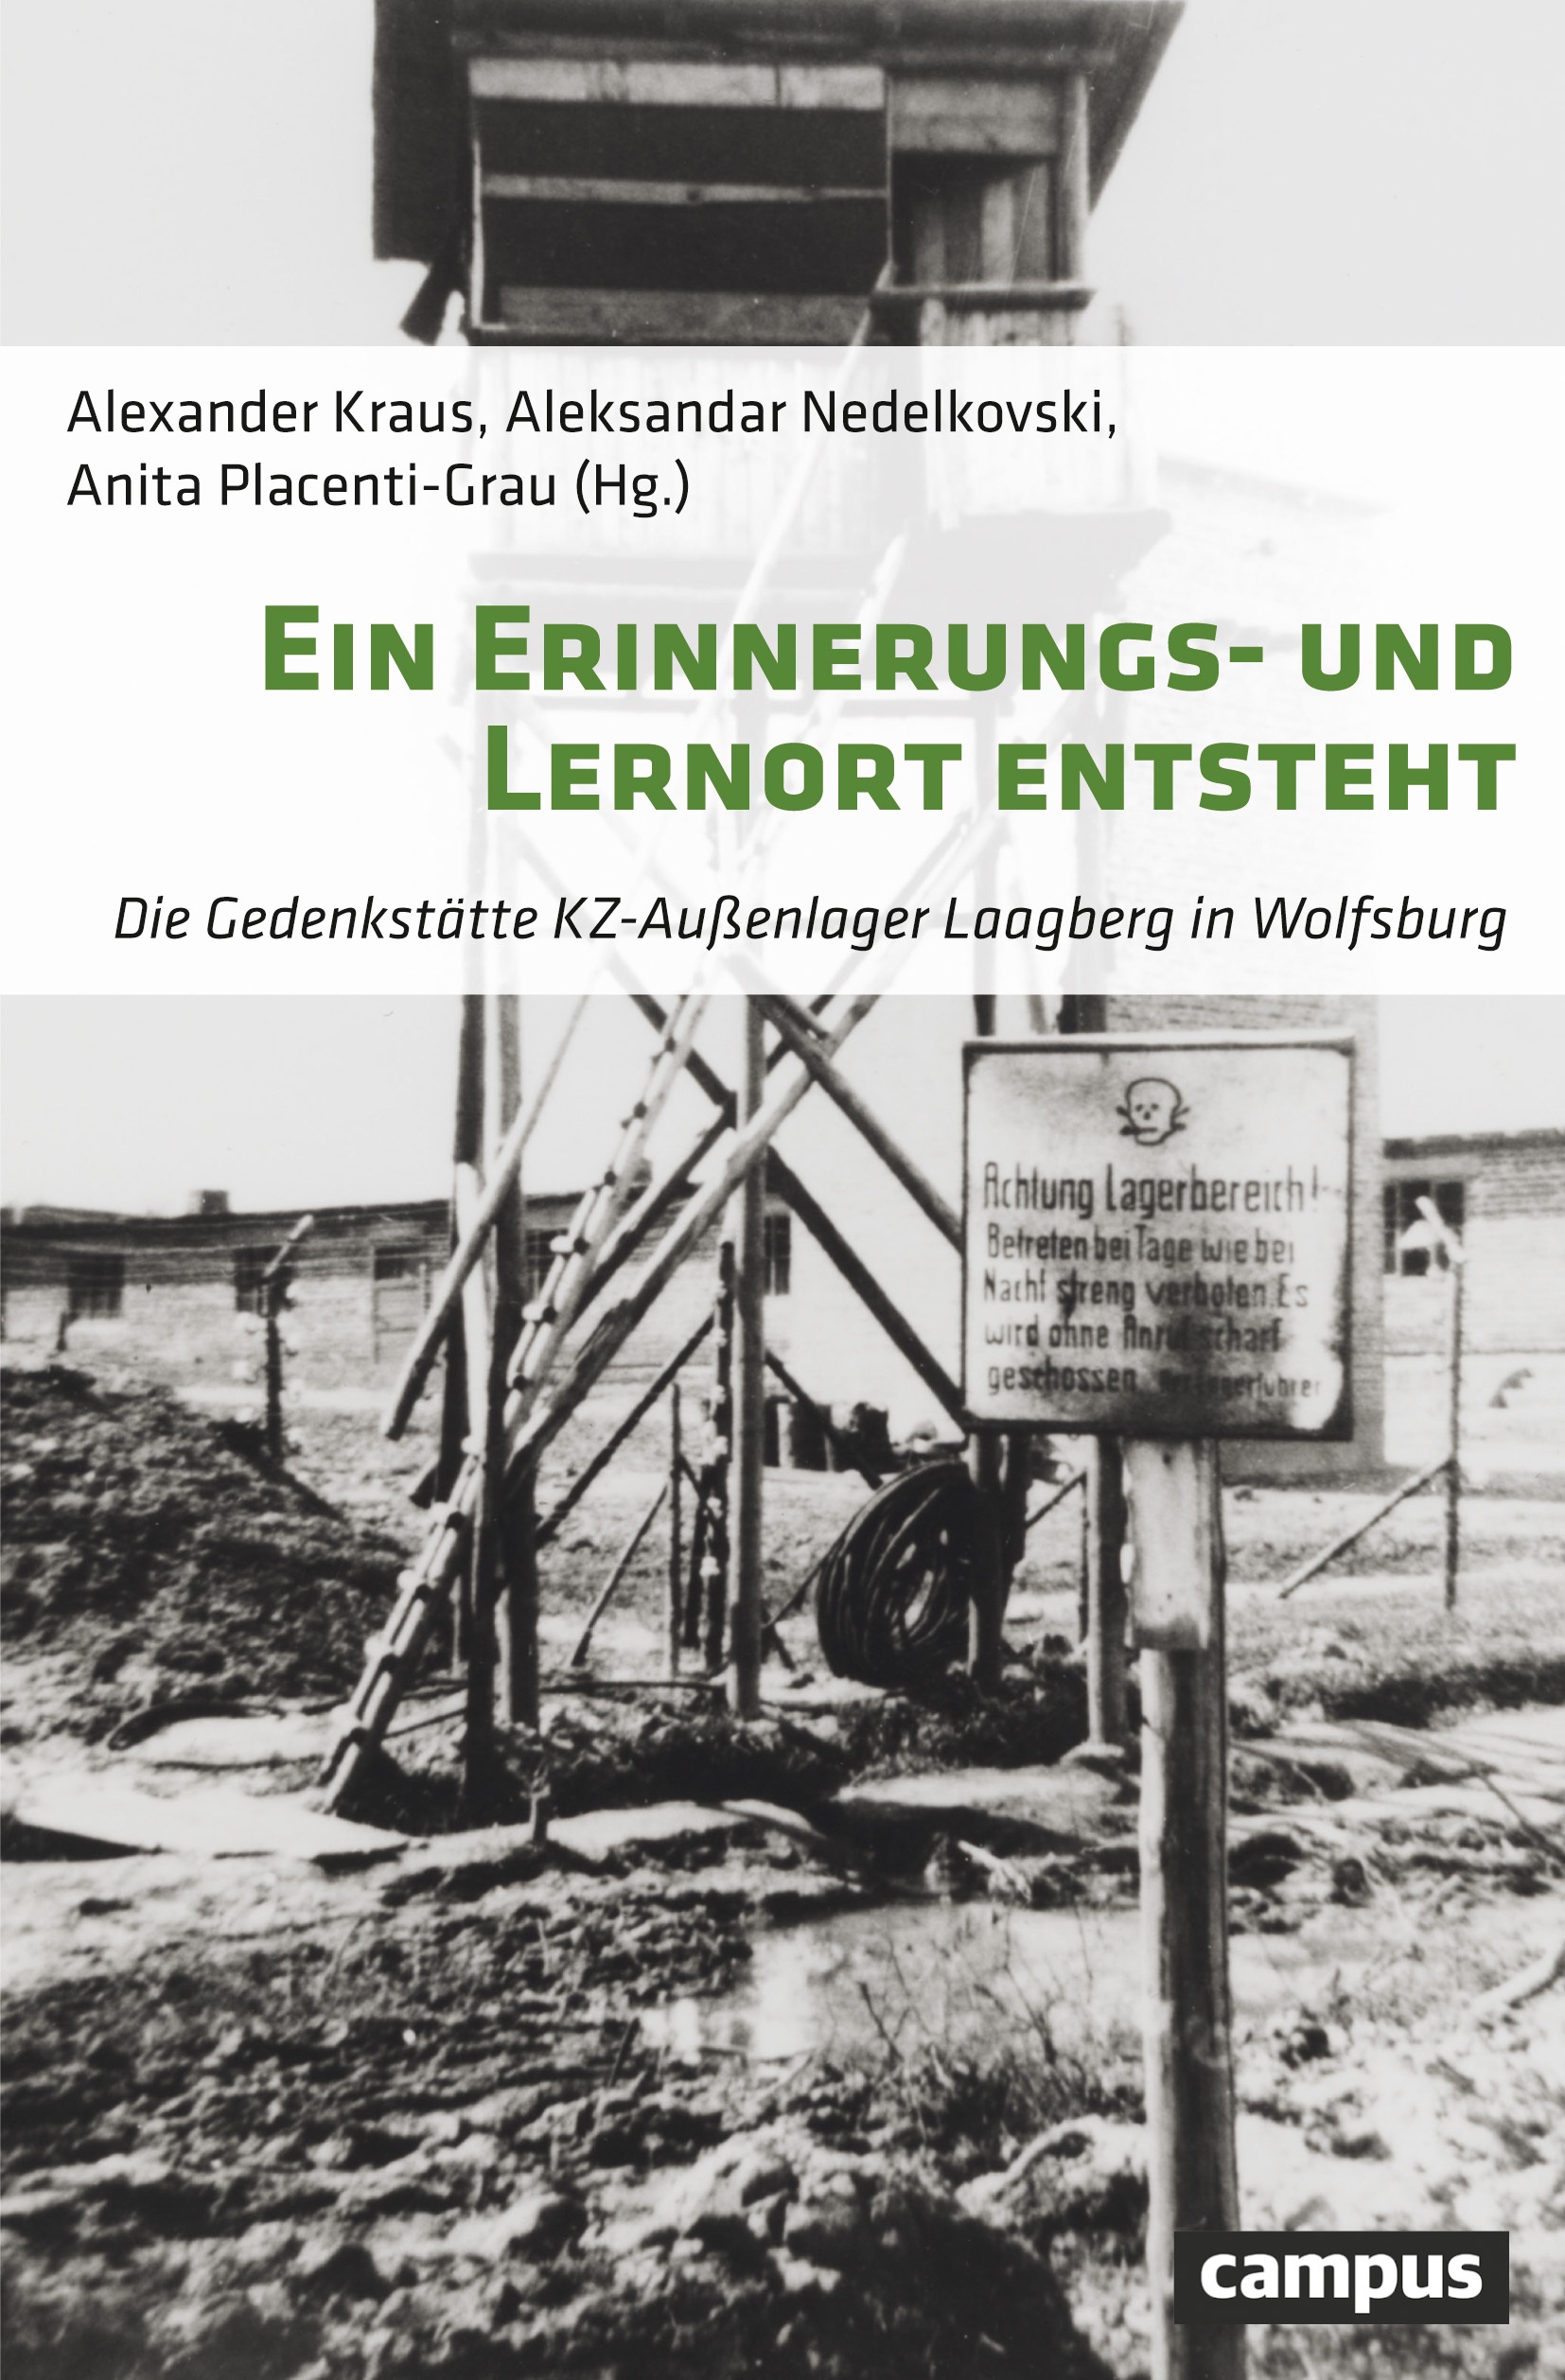 Titelblatt des Buchs "Ein Erinnerungs- und Lernort entsteht. Die Gedenkstätte KZ-Außenlager Laagberg in Wolfsburg"